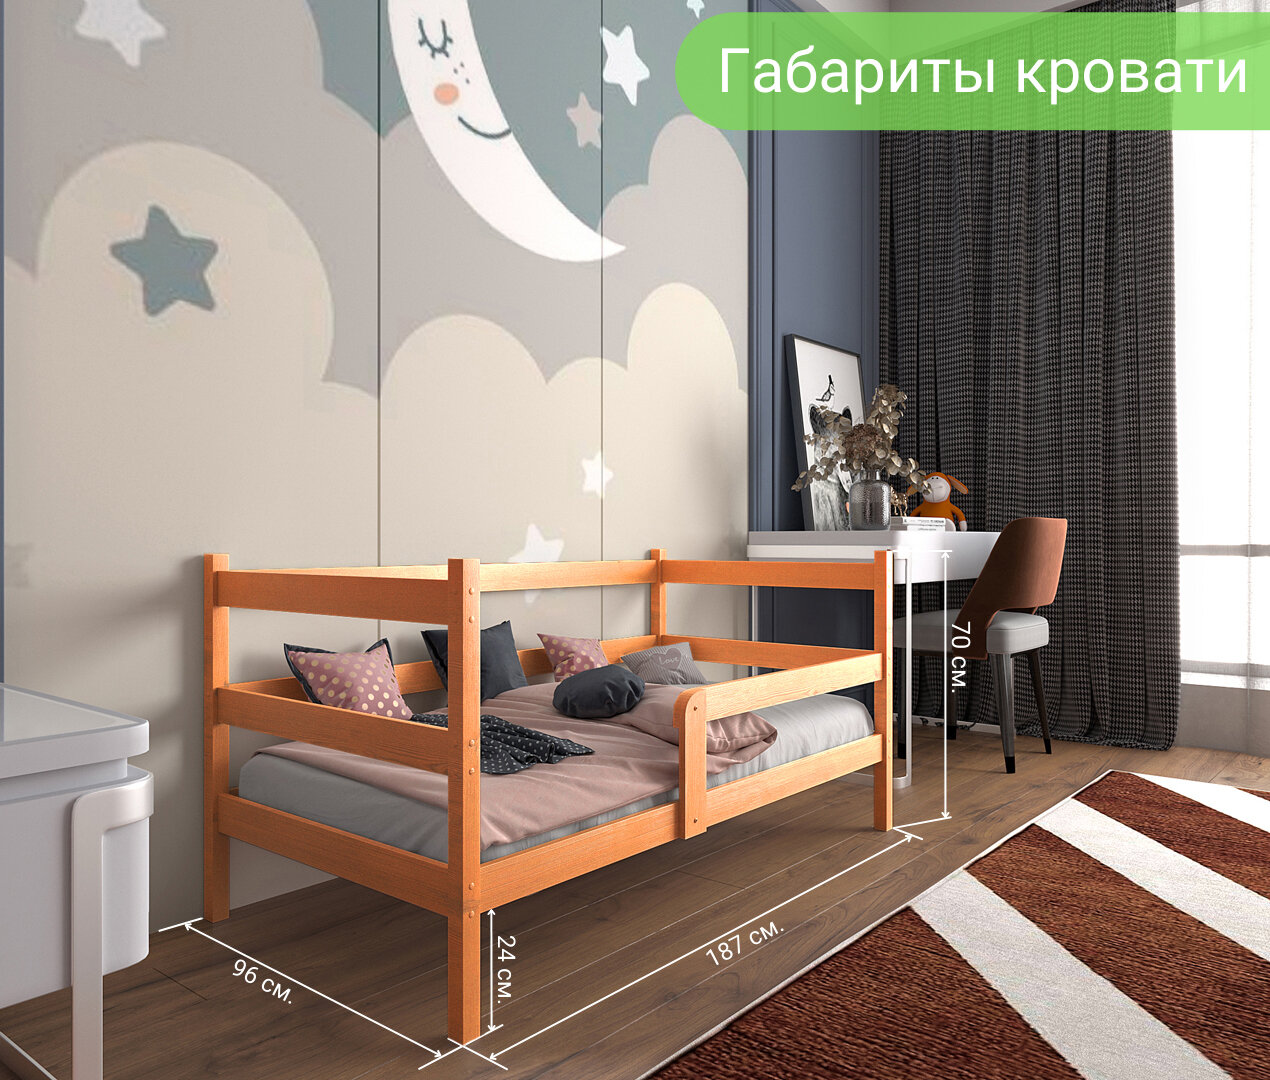 Кровать детская "Софа", спальное место 180х90, в комплекте с ортопедическим матрасом, масло "Орех", из массива